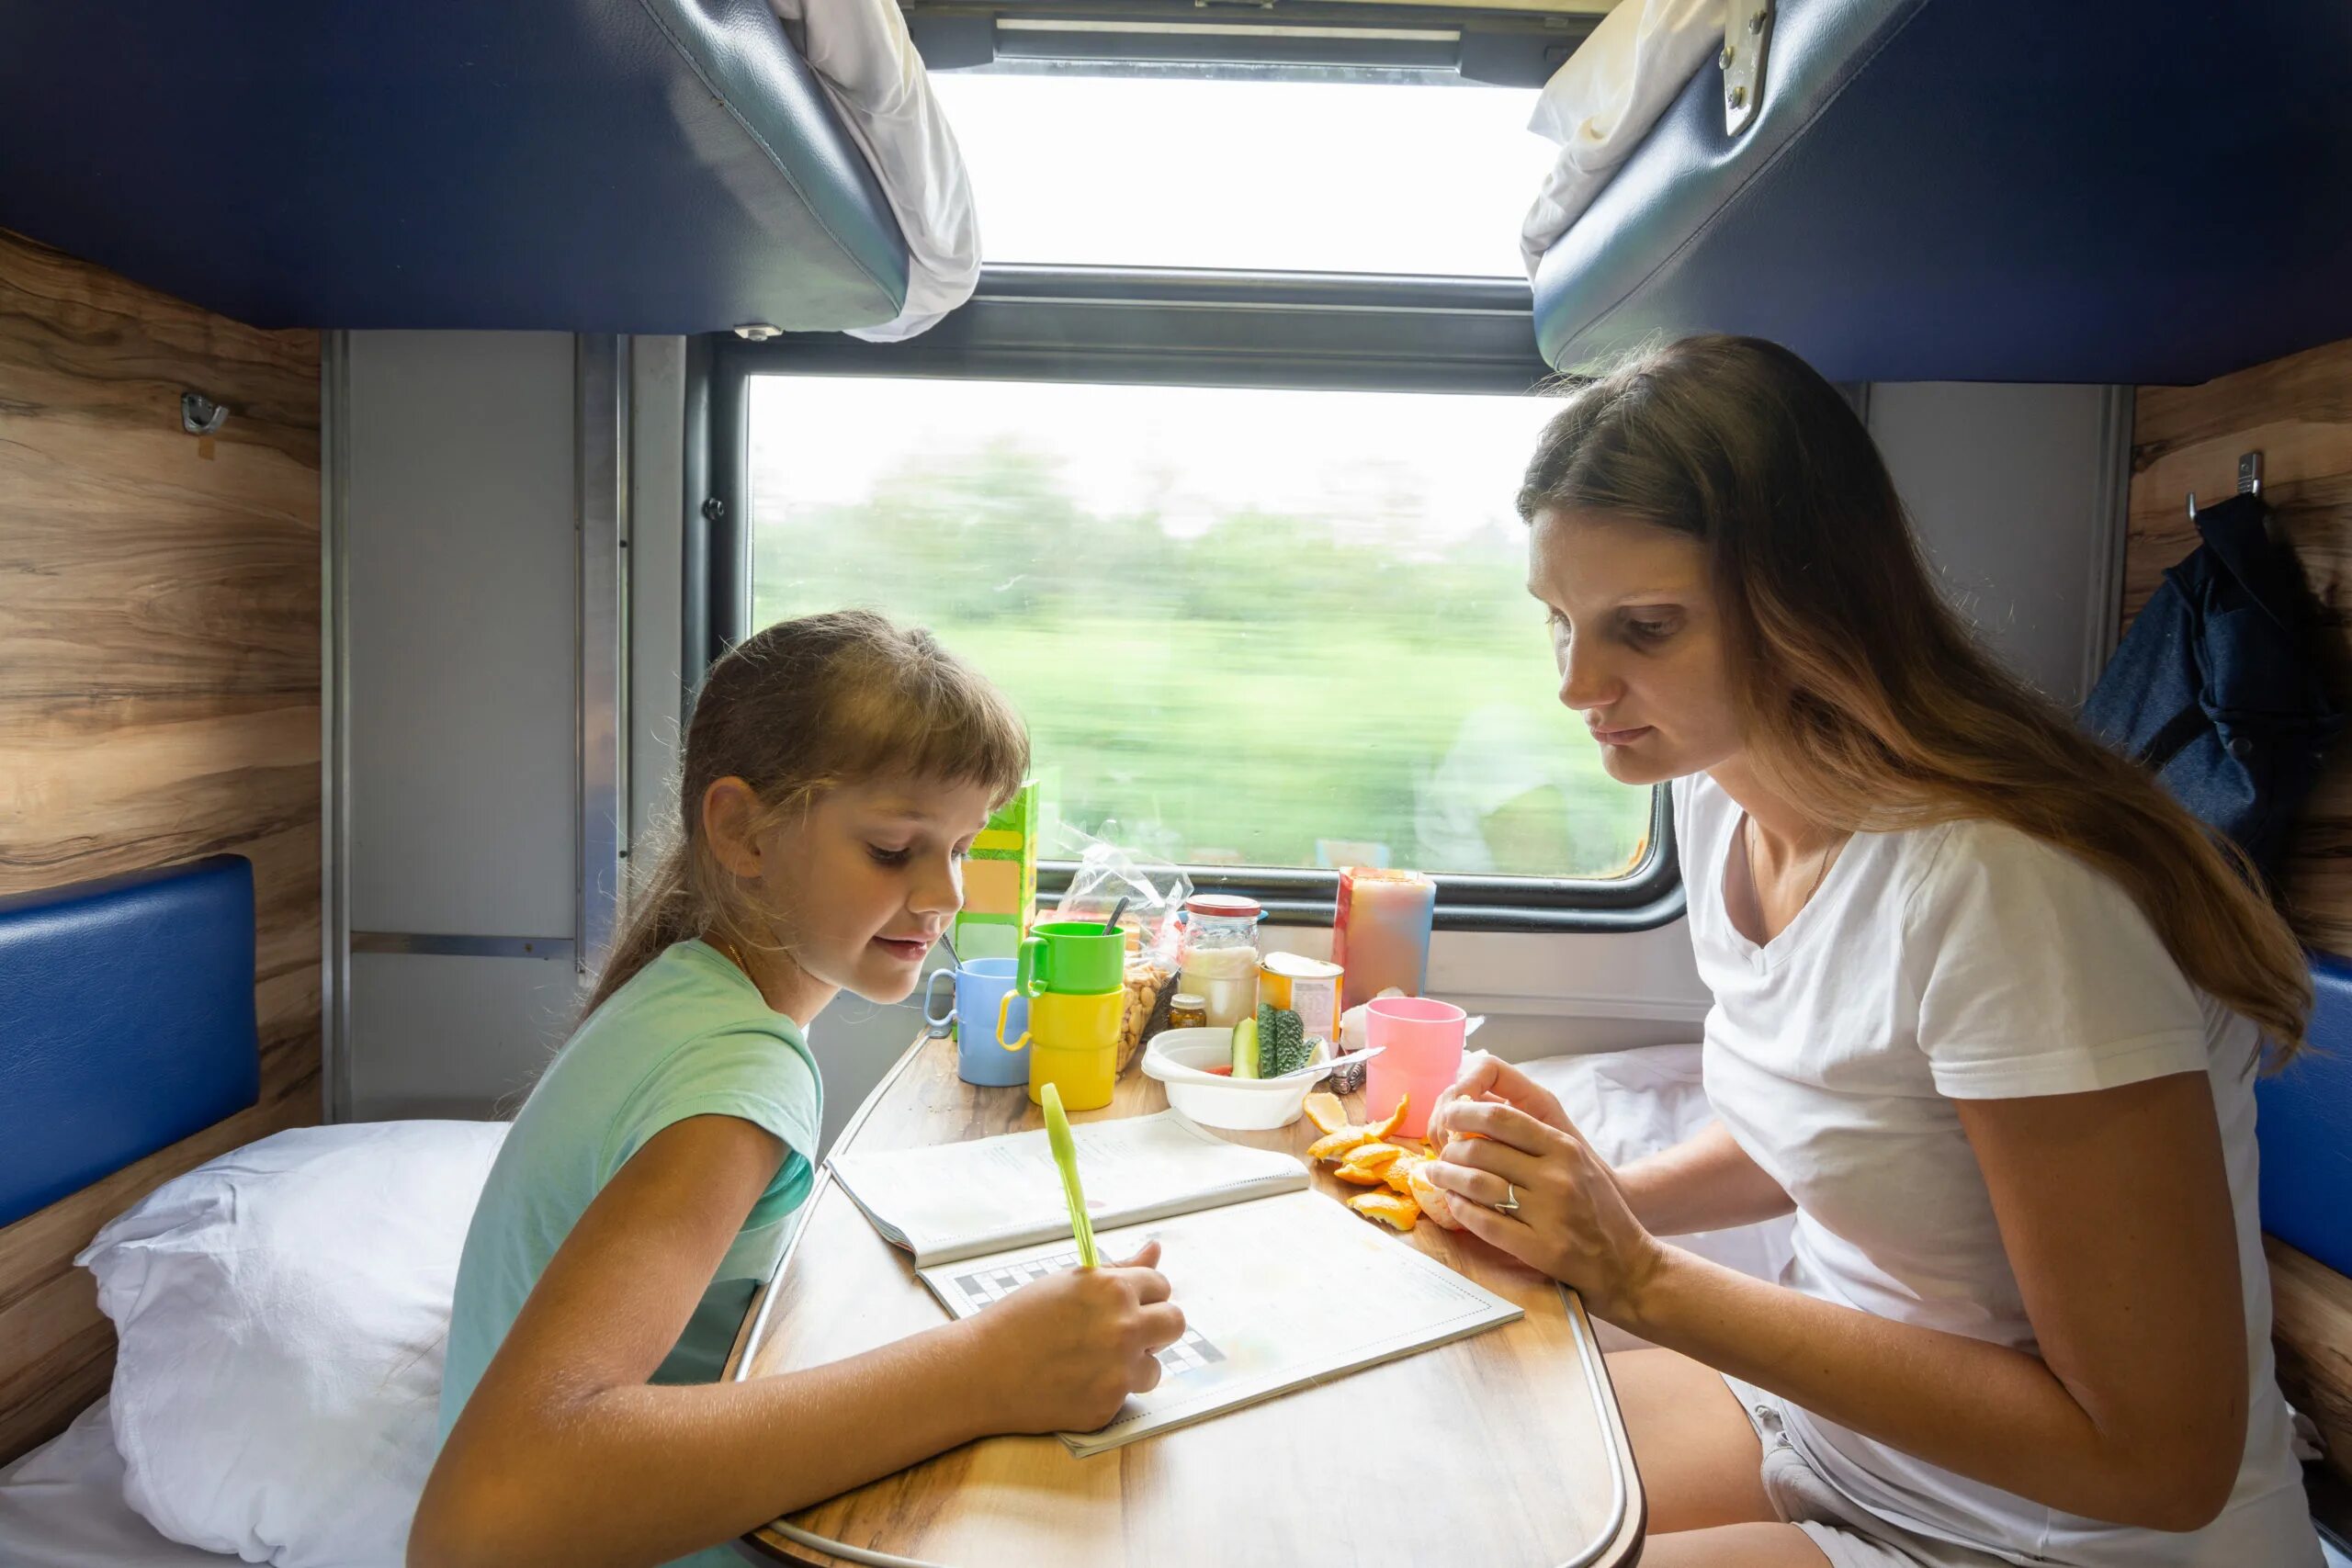 Еда в поезд с детьми. Поезда для детей. Мама с ребенком в поезде. Питание в поезде. 12 поезда мама